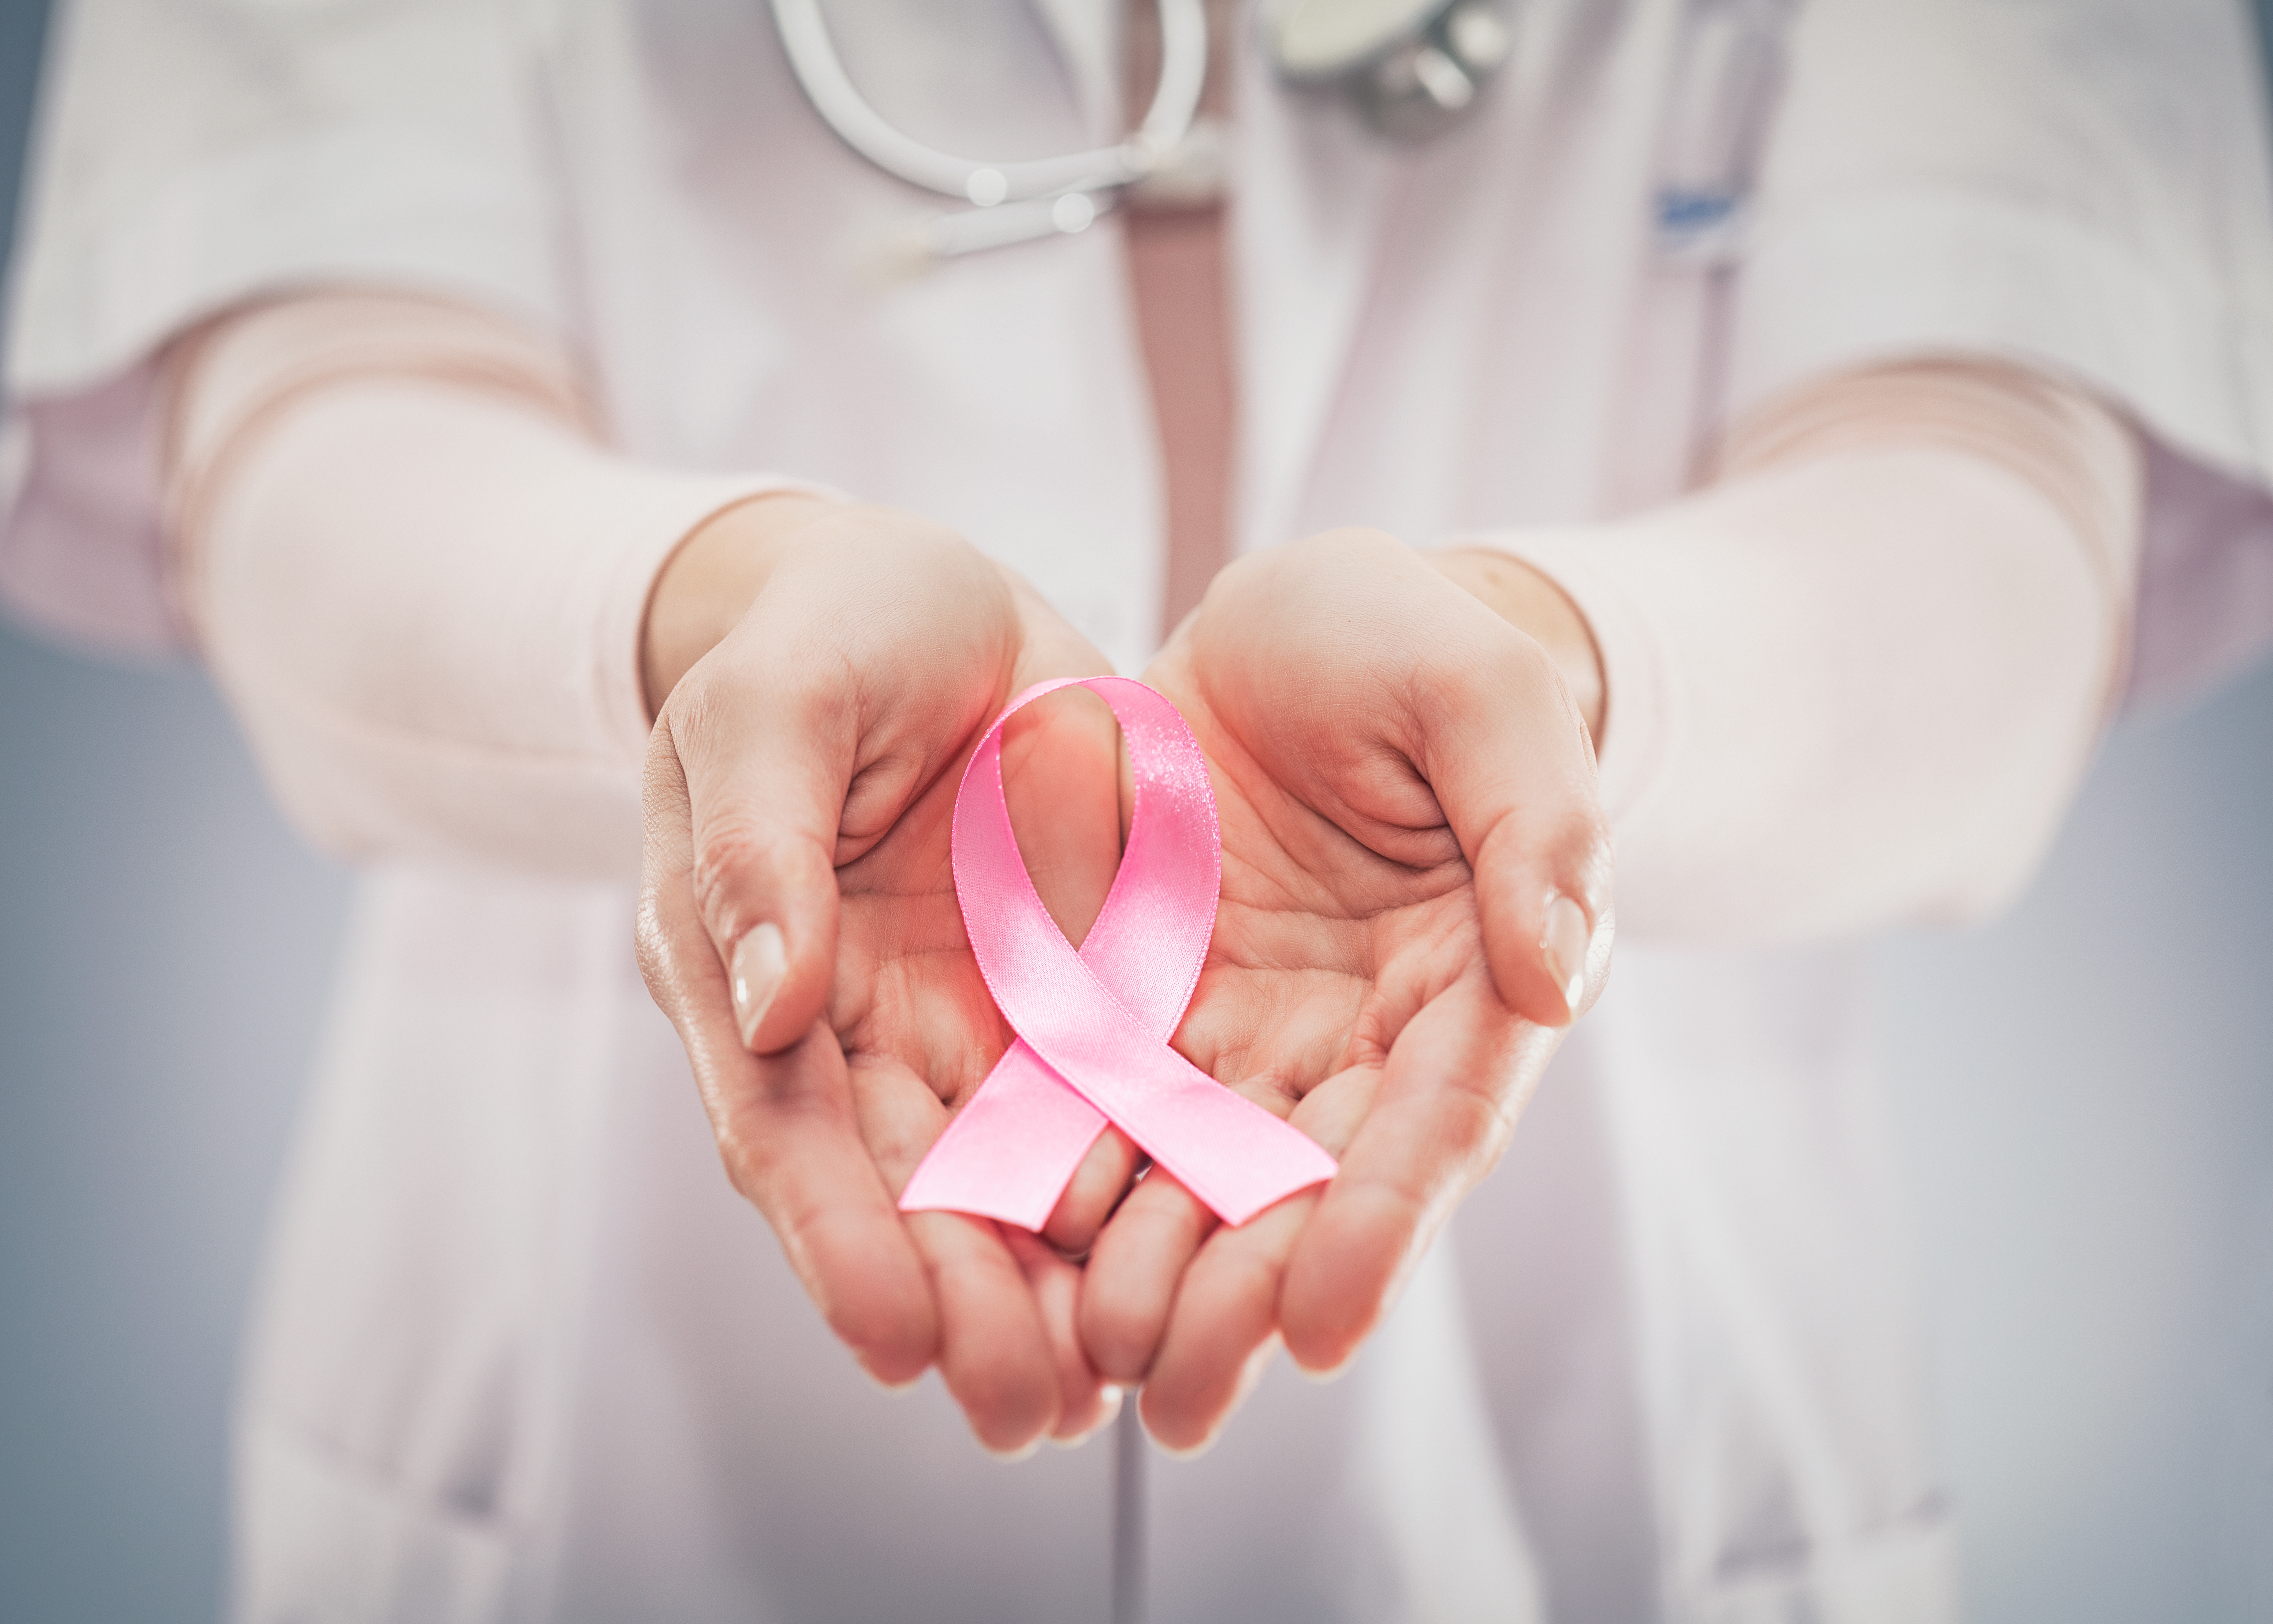  Fatores de risco do câncer de mama